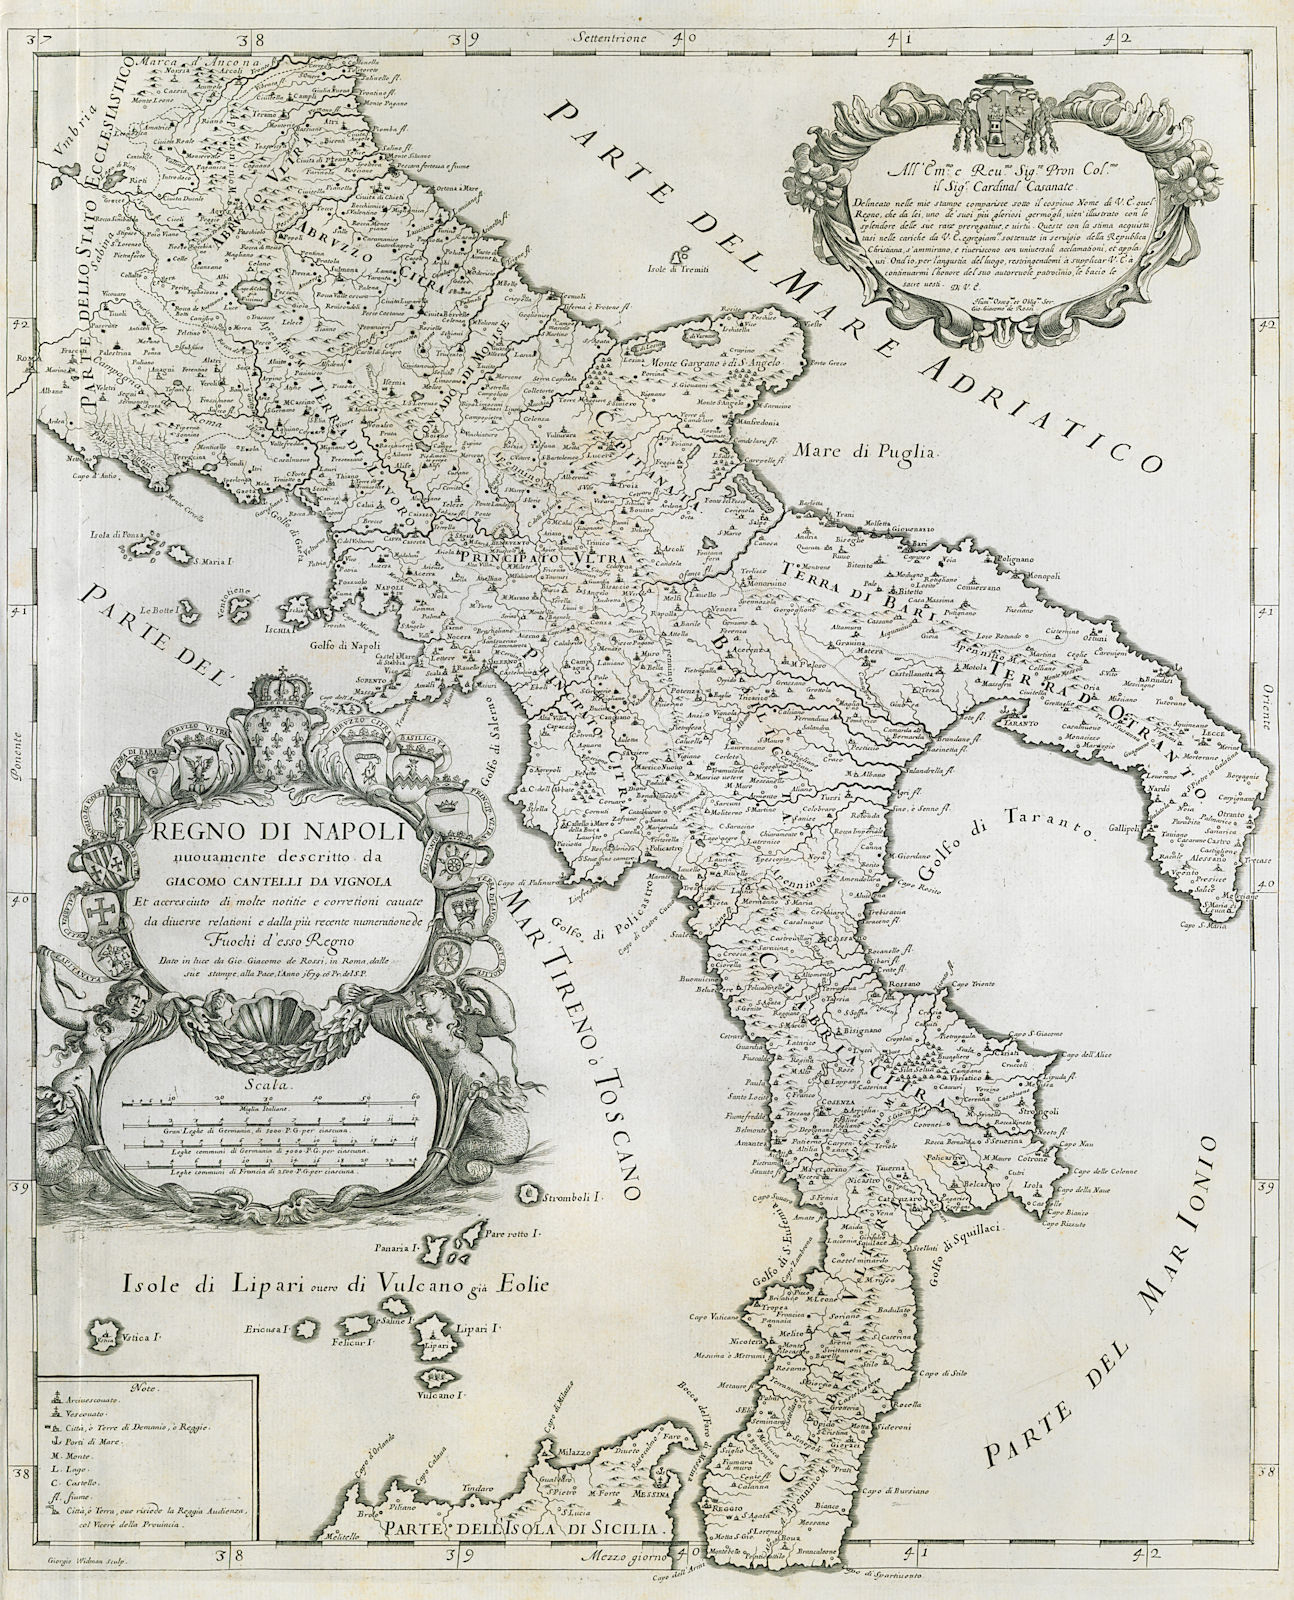 Regno di Napoli. Kingdom of Naples. Southern Italy. DE ROSSI / CANTELLI 1679 map